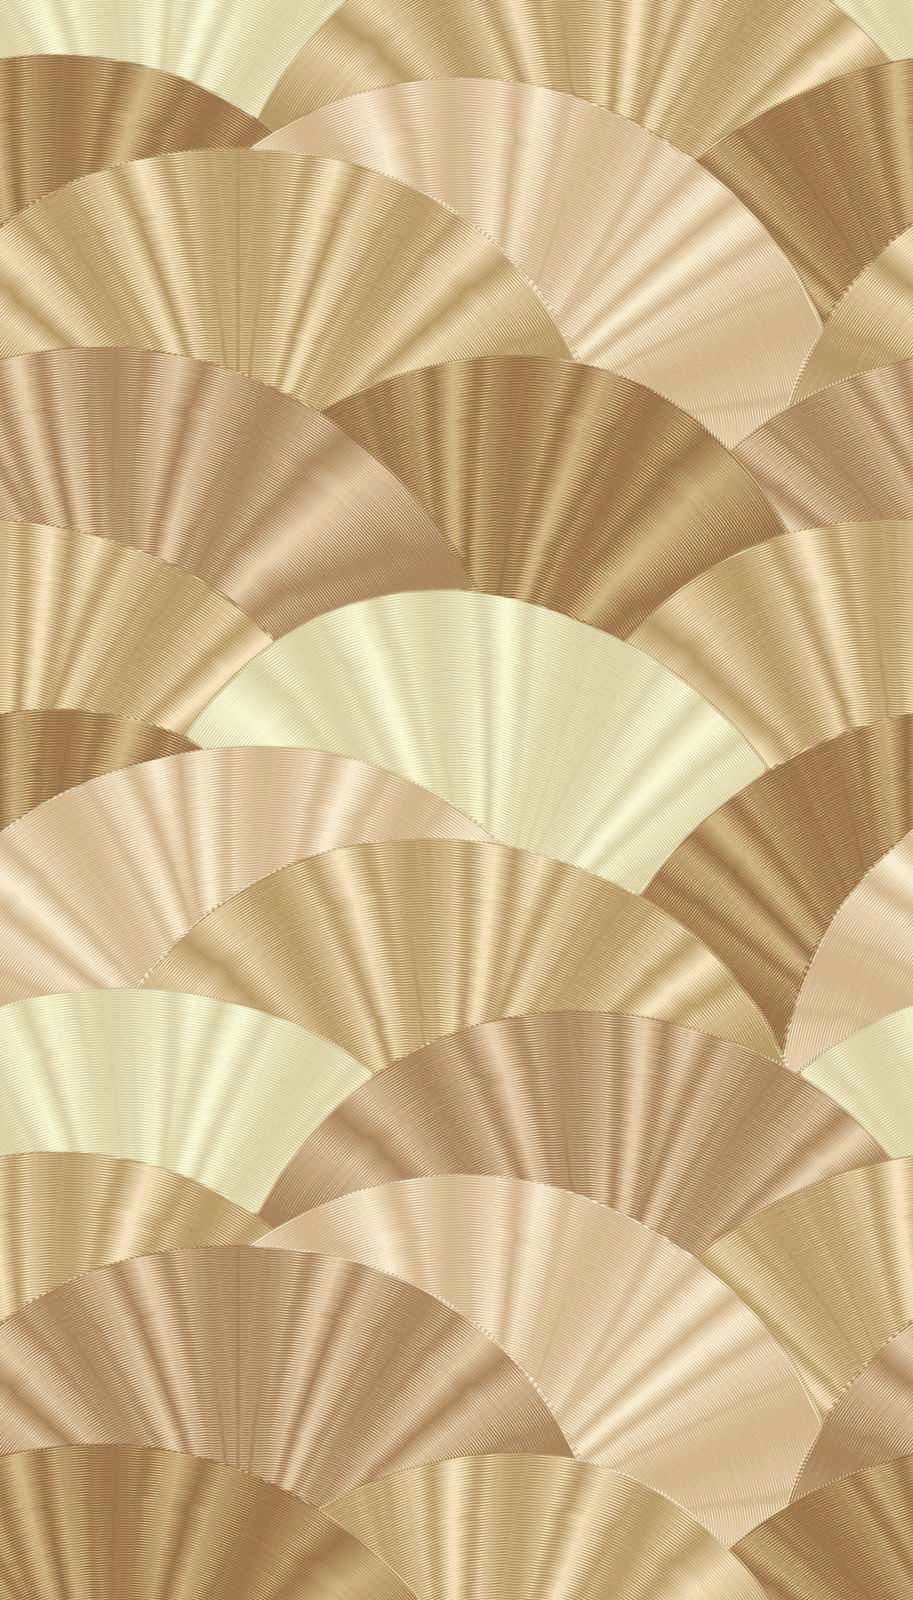             Abstract fan pattern wallpaper - gold, beige, cream
        